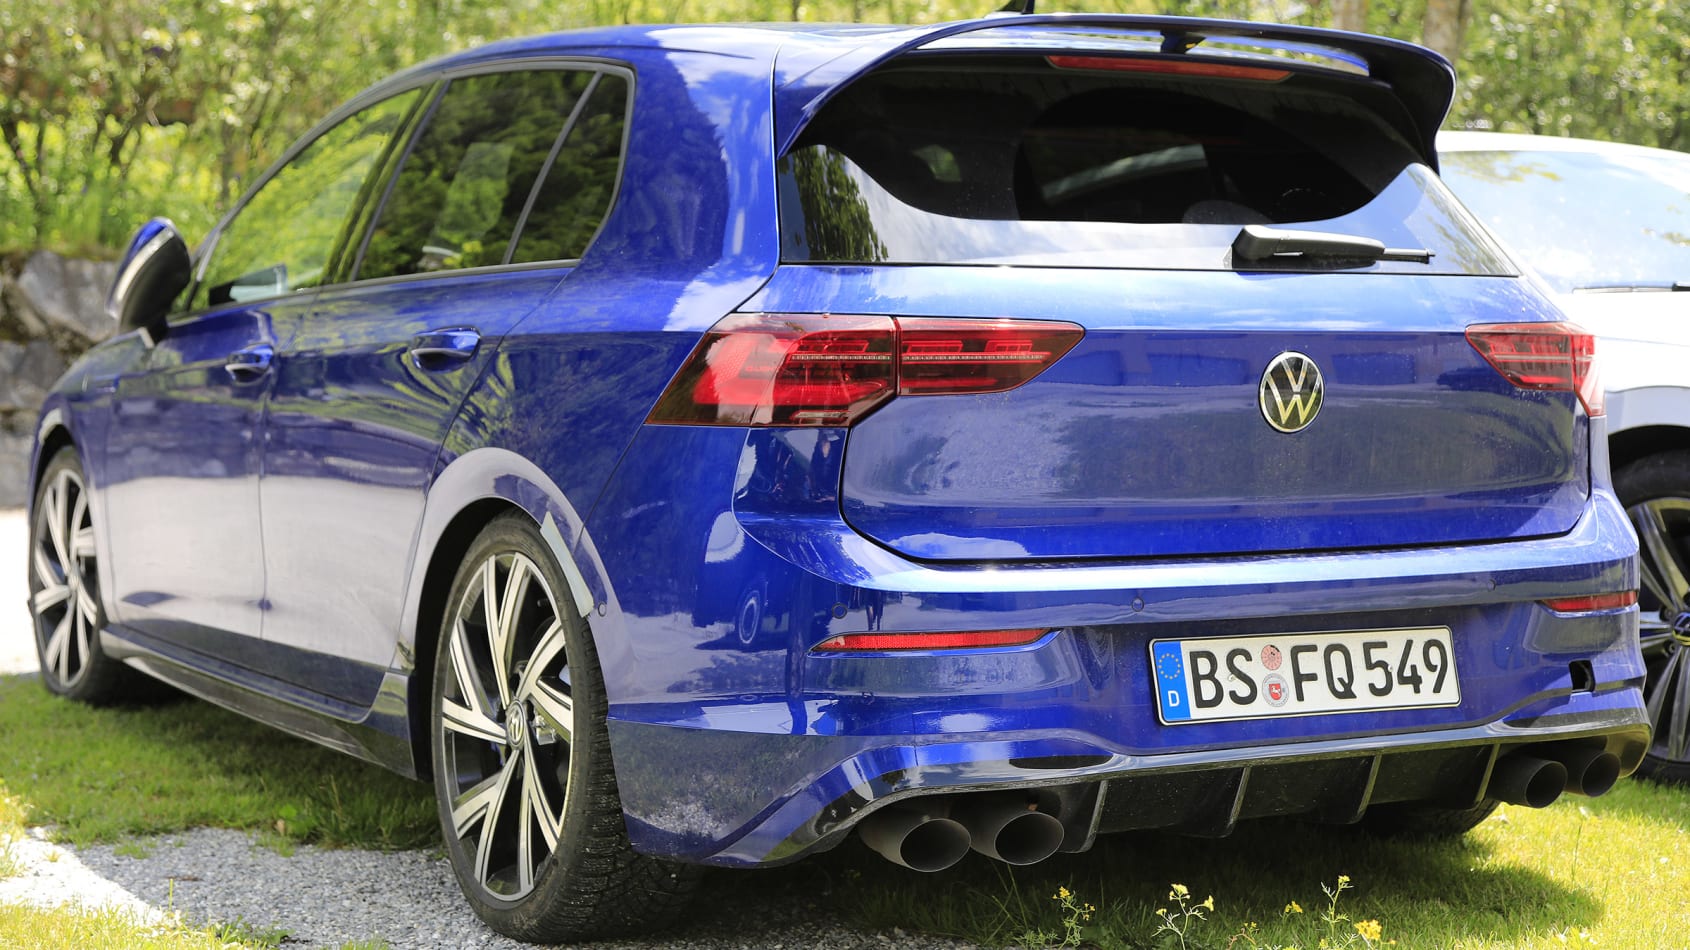 aria-label="VW Golf R 005"